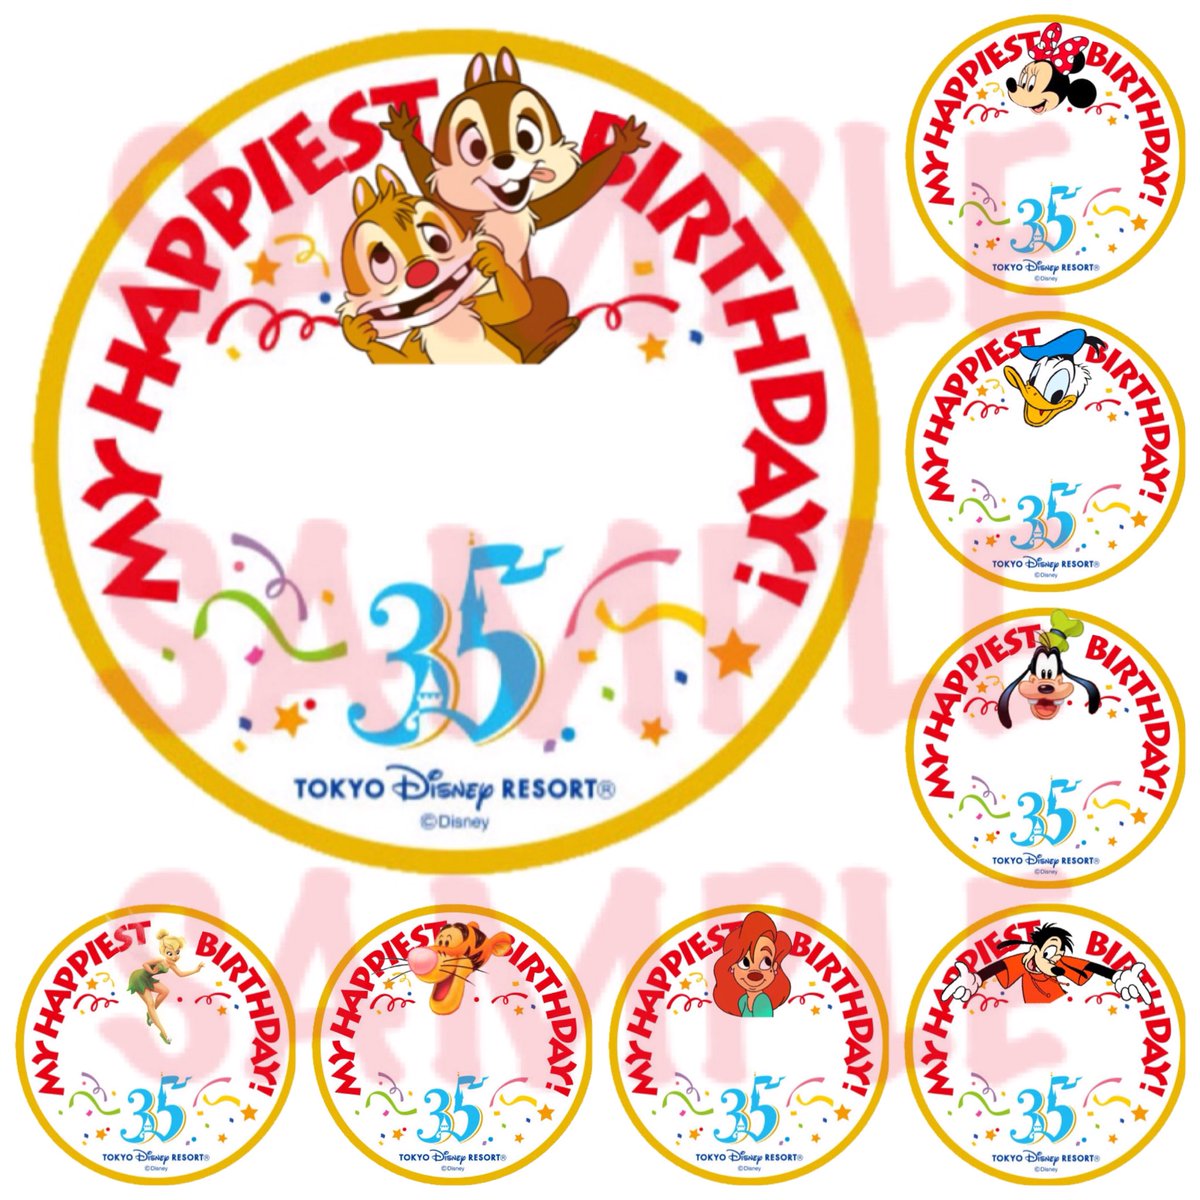 Kay 自分の誕生日まであと3日だから お遊び半分でいっぱい作った 35周年バージョン ディズニー バースデーシール Disney Birthday Stickers T Co Rahspjuws8 Twitter